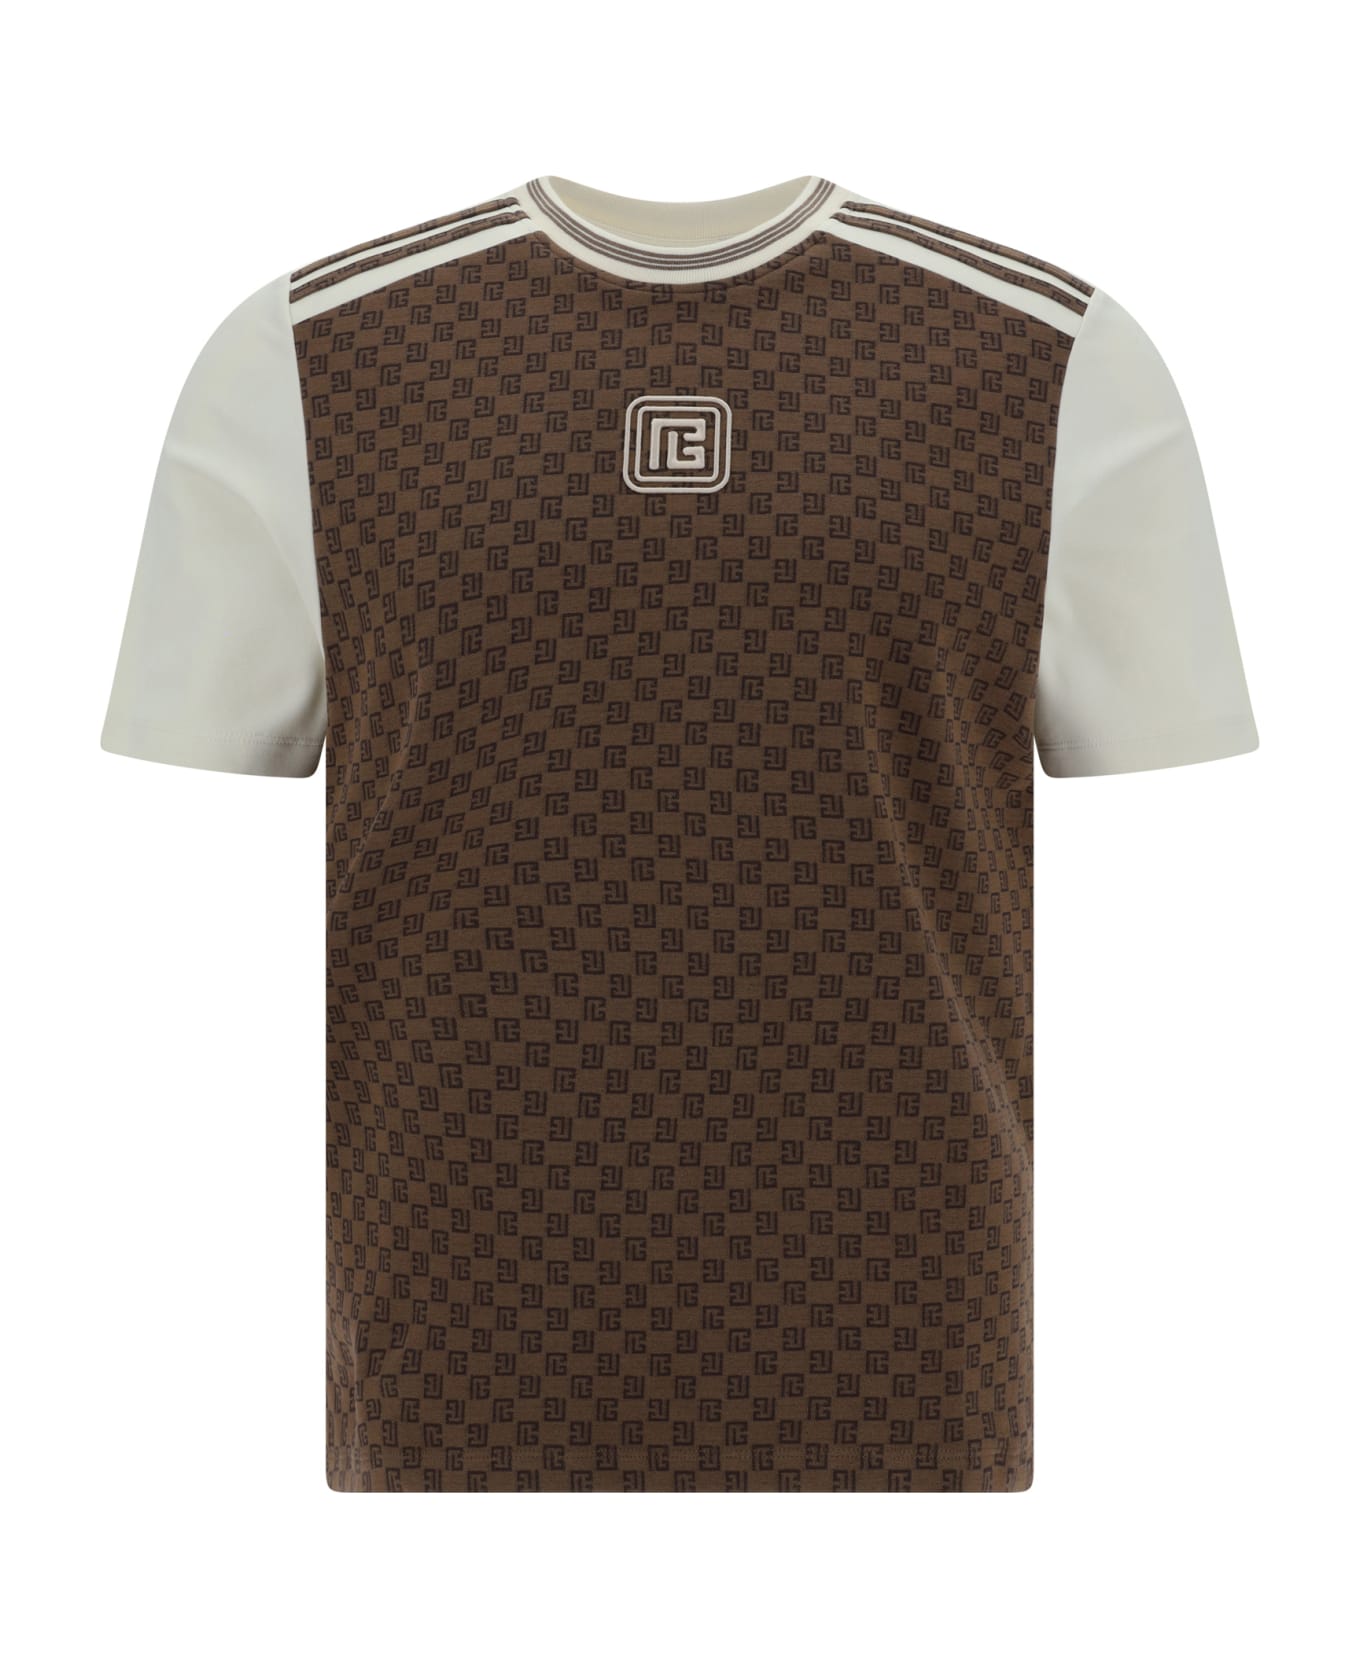 Balmain T-shirt - Marron/marron foncè/creme